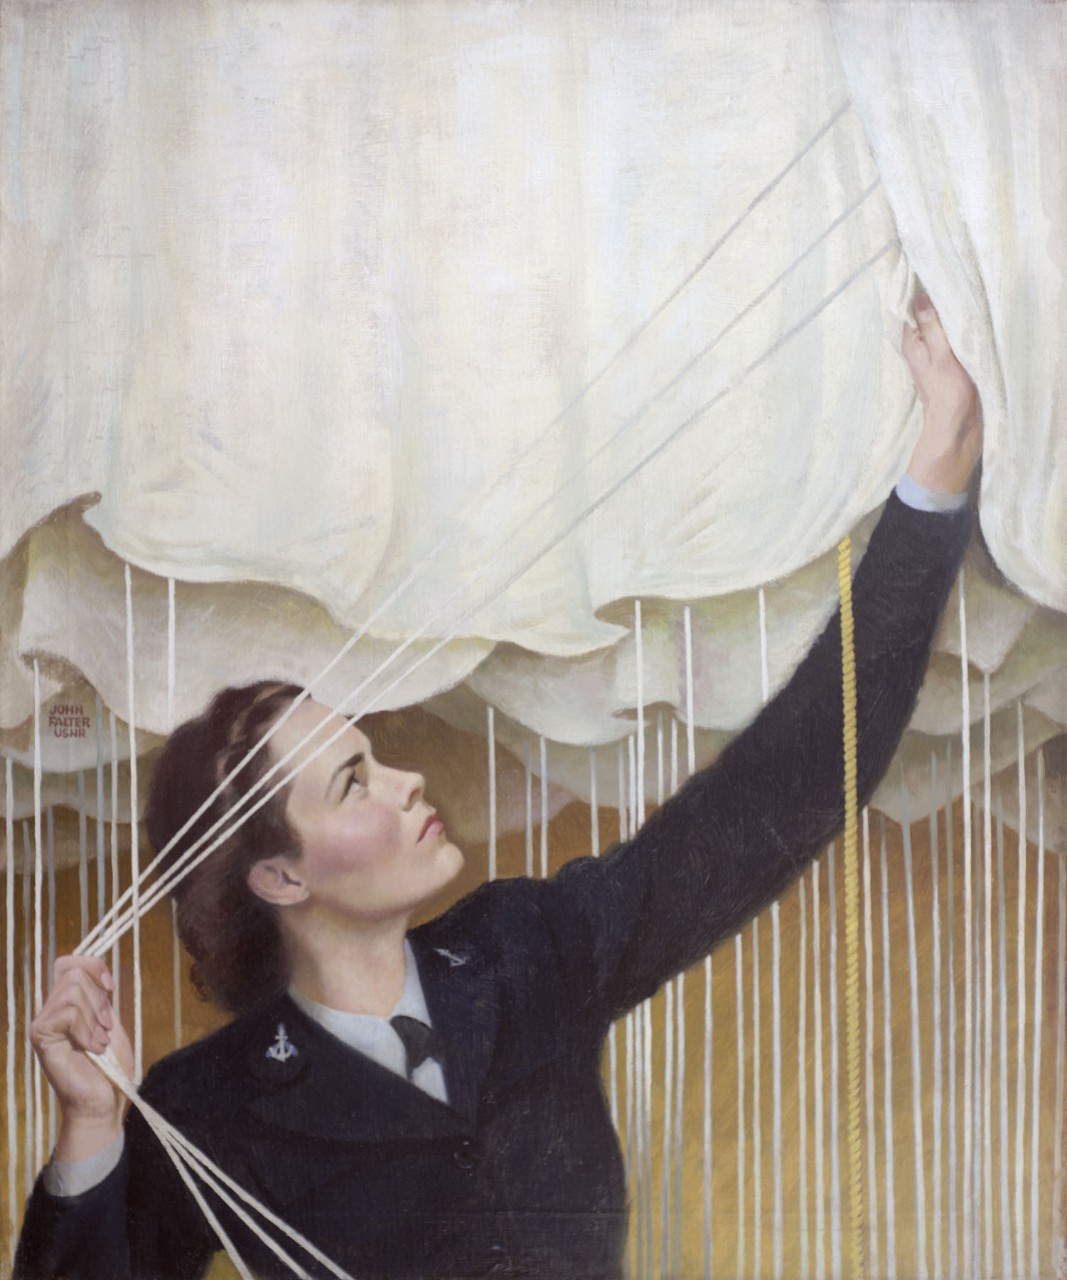 A women is preparing a parachute